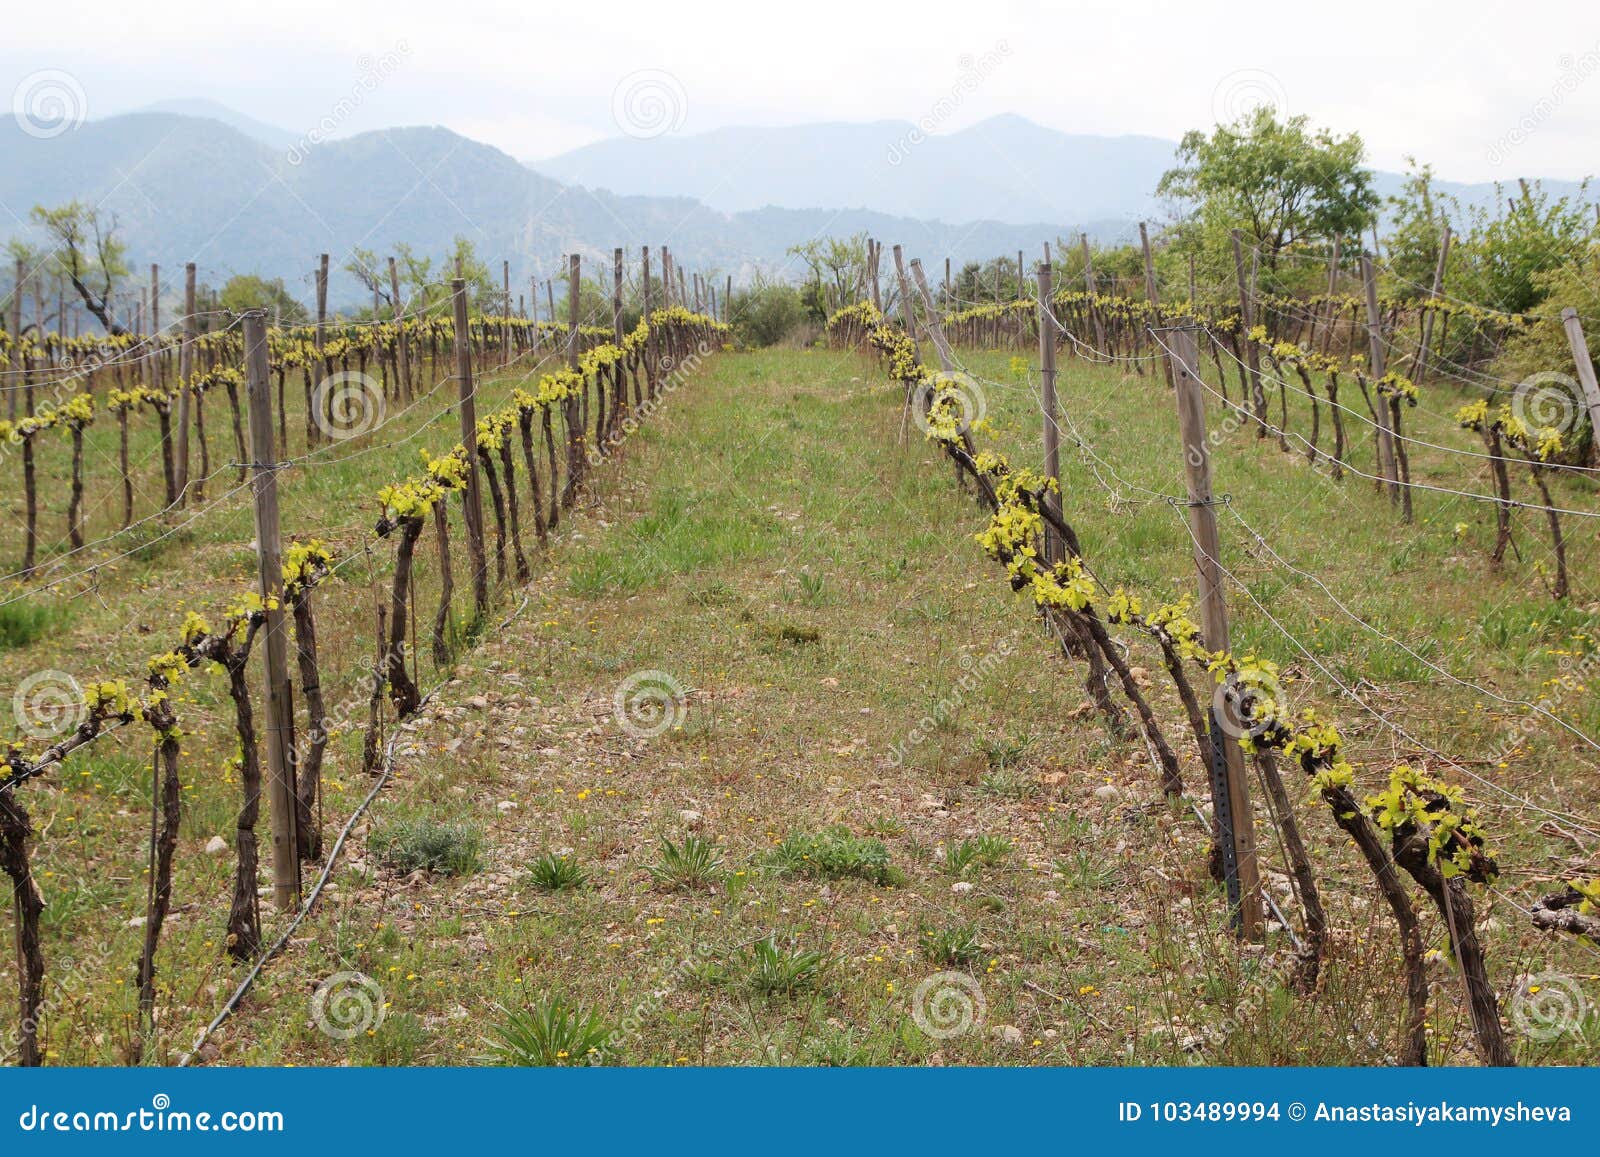 vineyard in priorat, spain